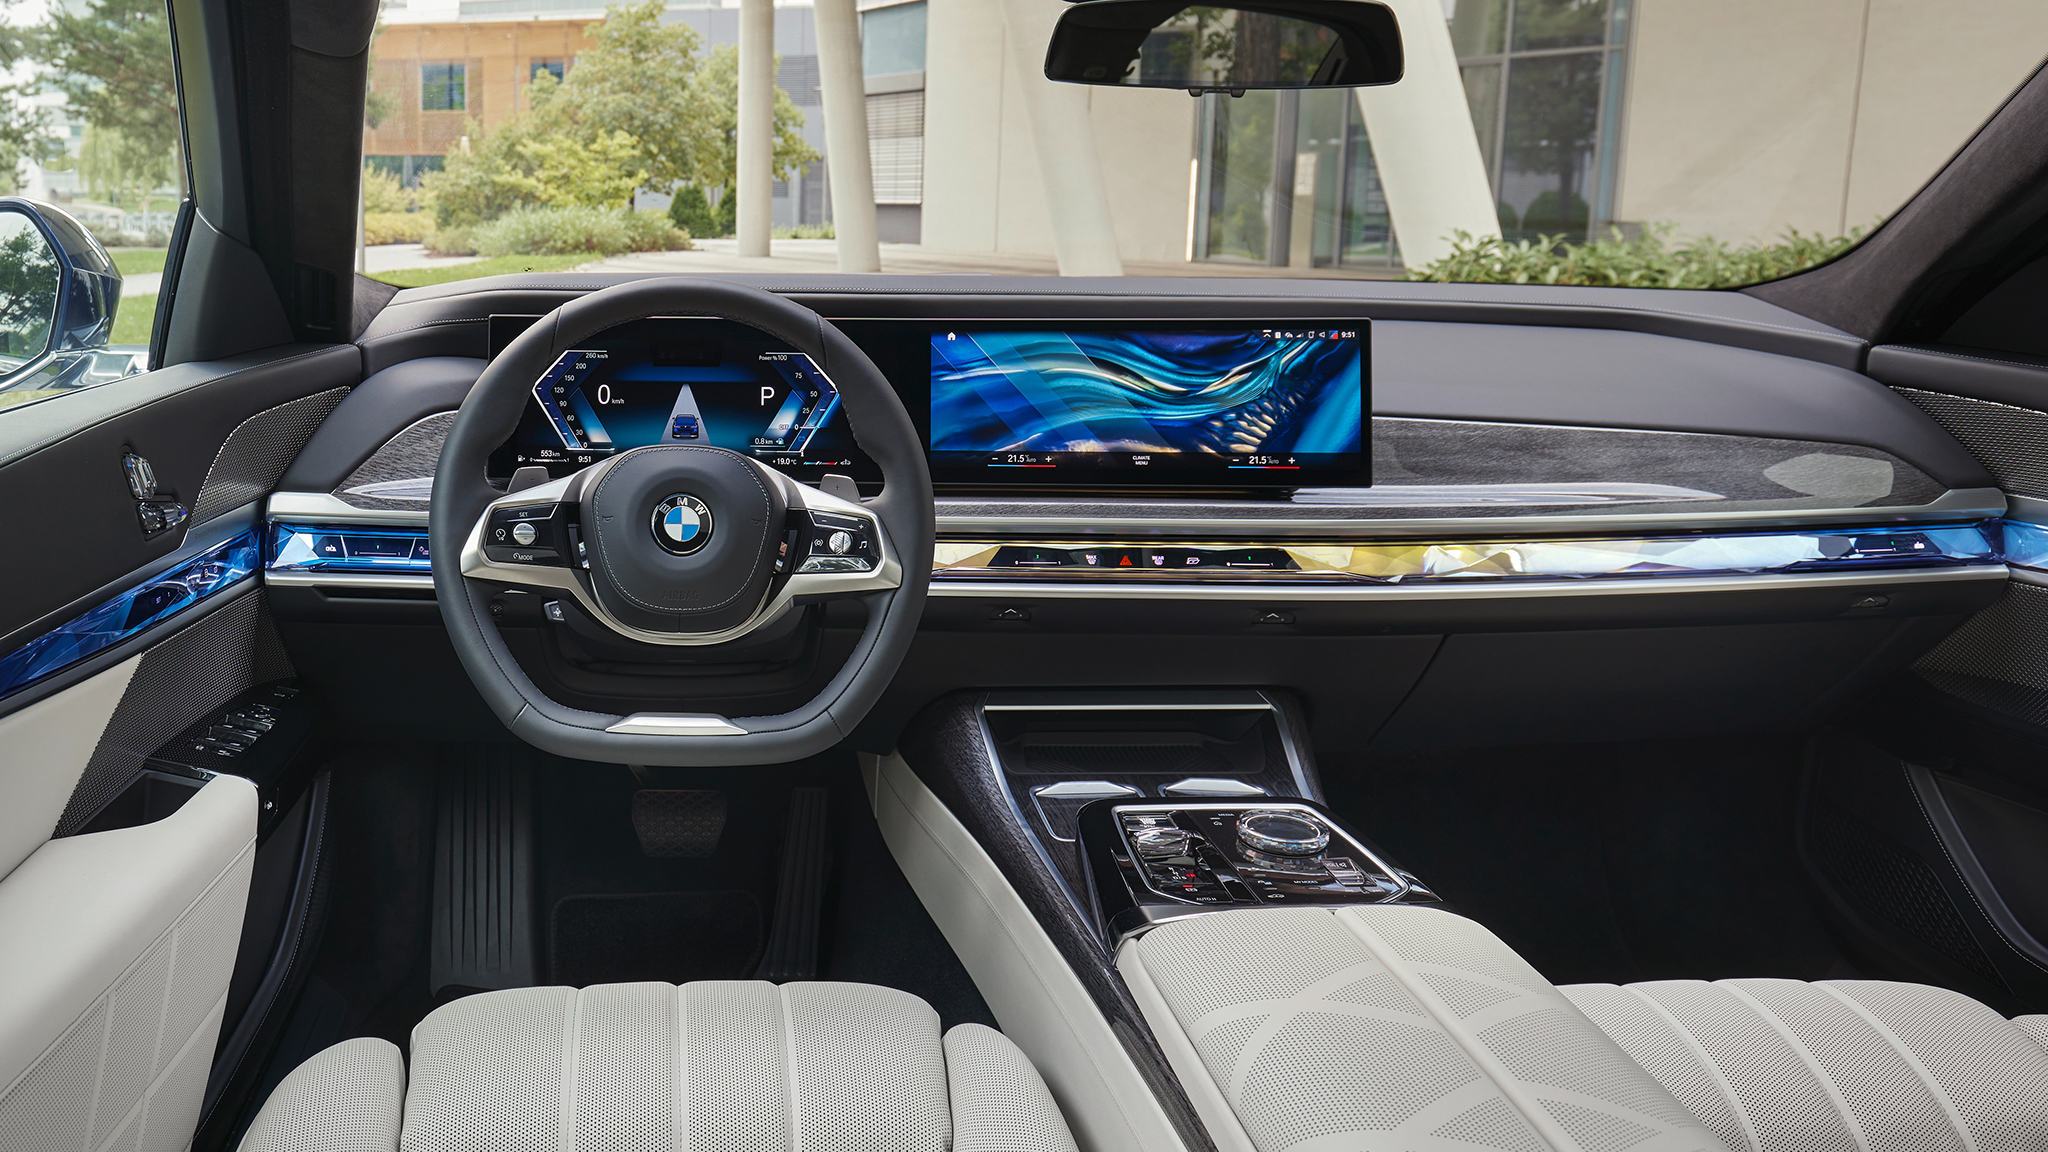 BMW: Autobauer verbessert Sprachassistenten durch Alexa-KI